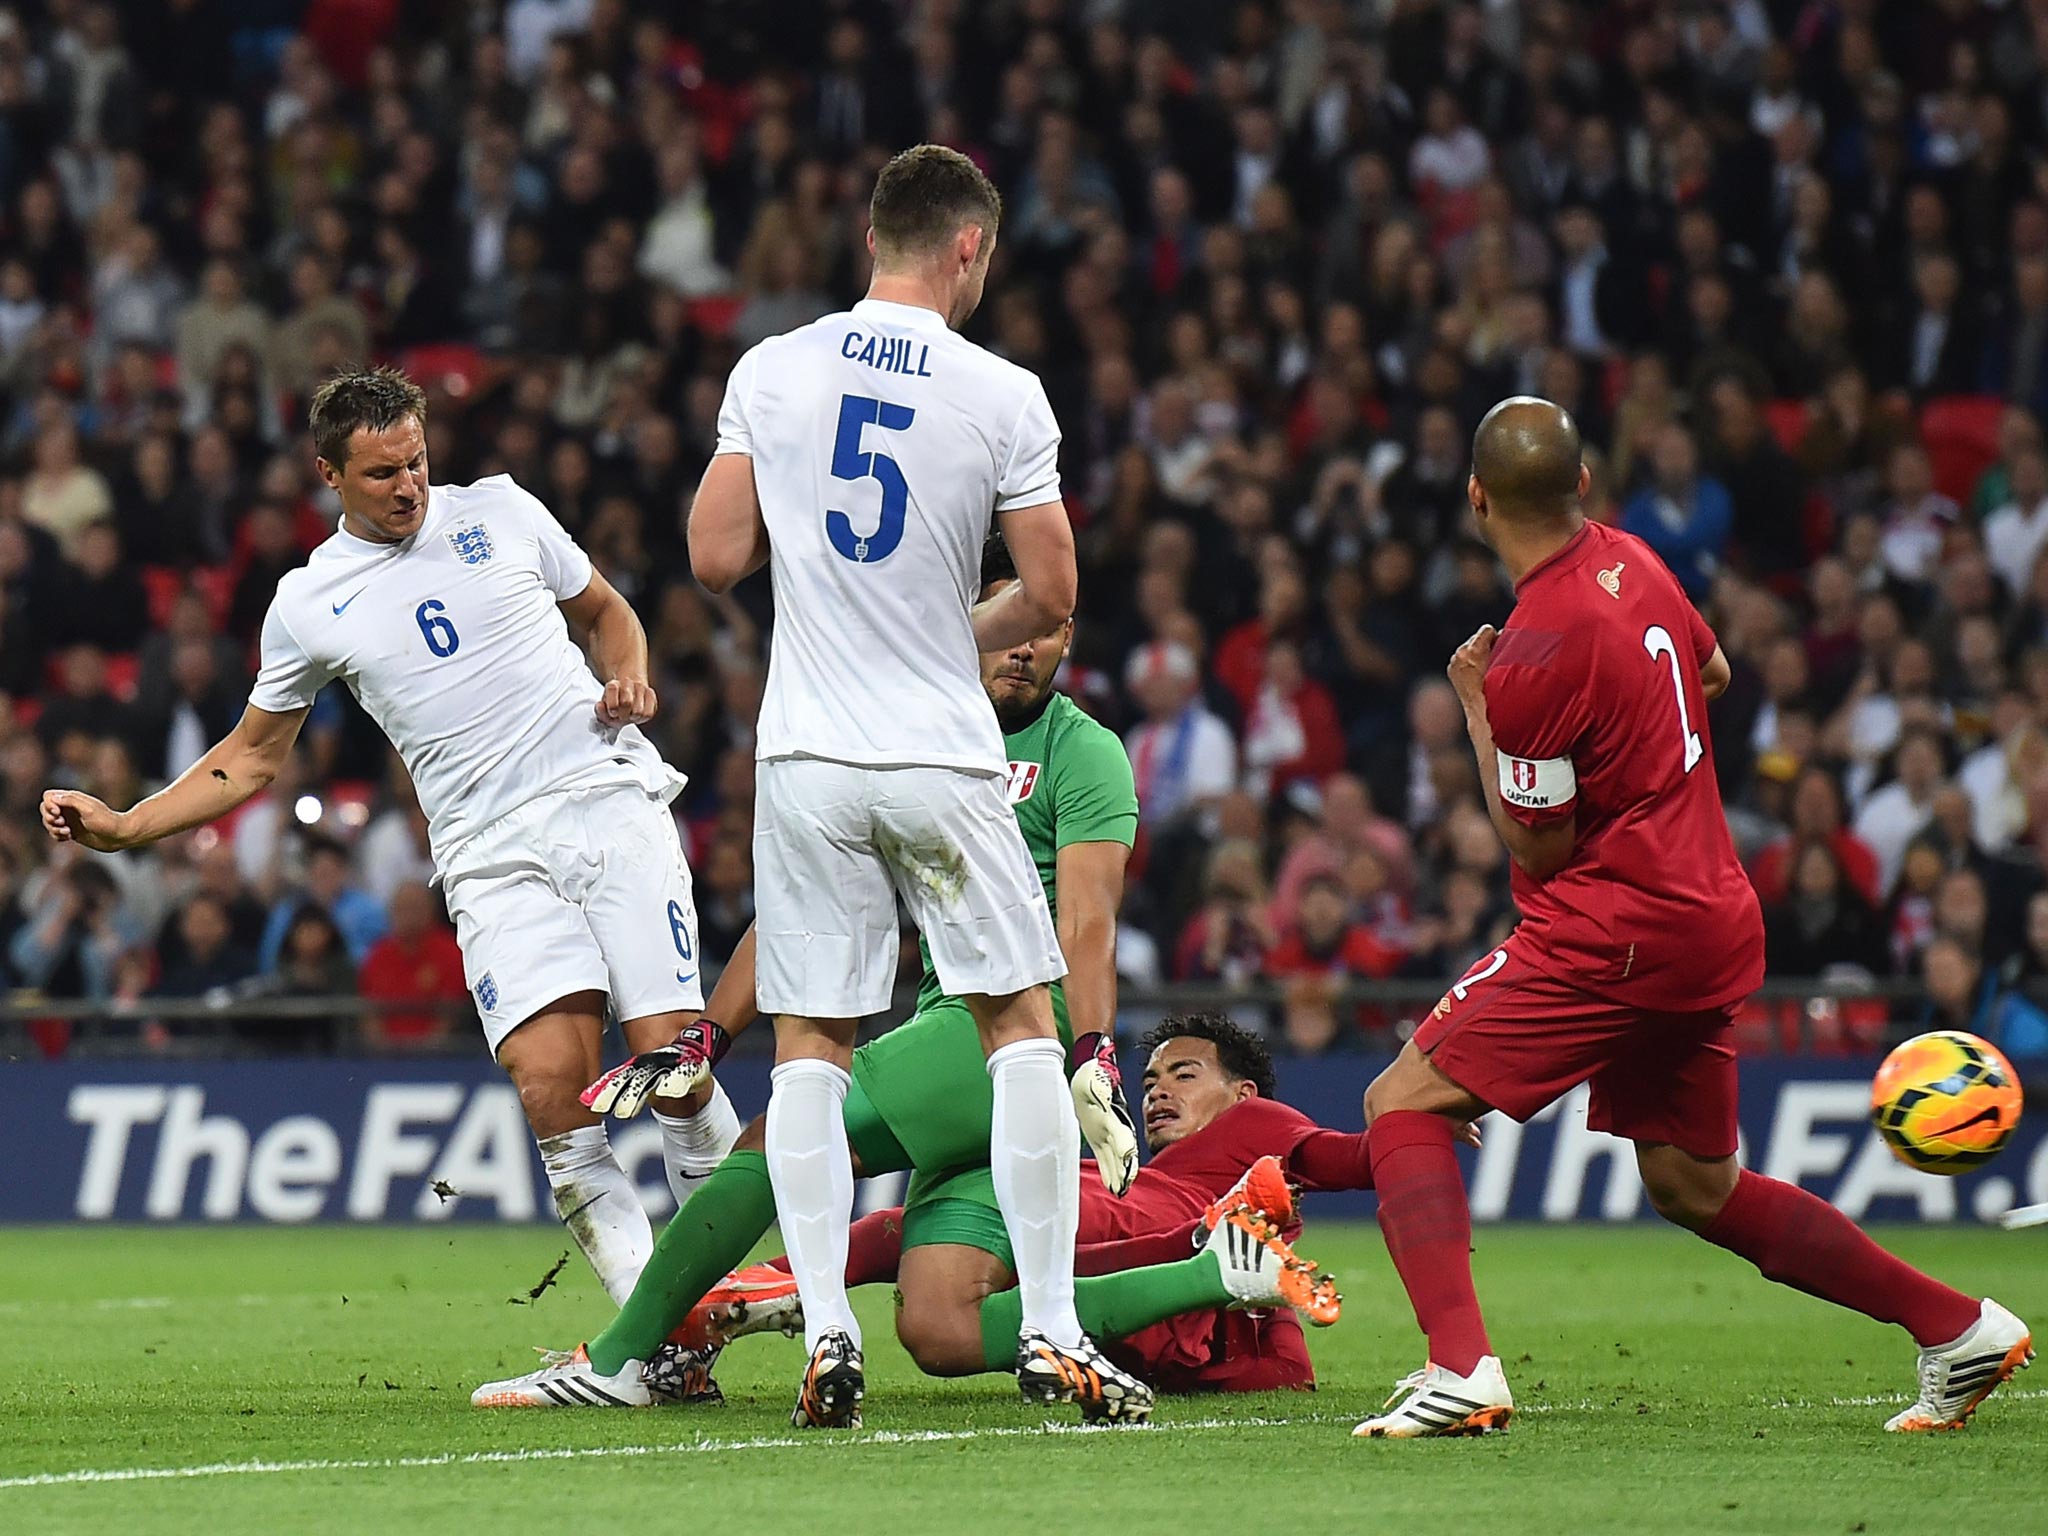 Phil Jagielka scores England’s third goal after an error by the Peru goalkeeper